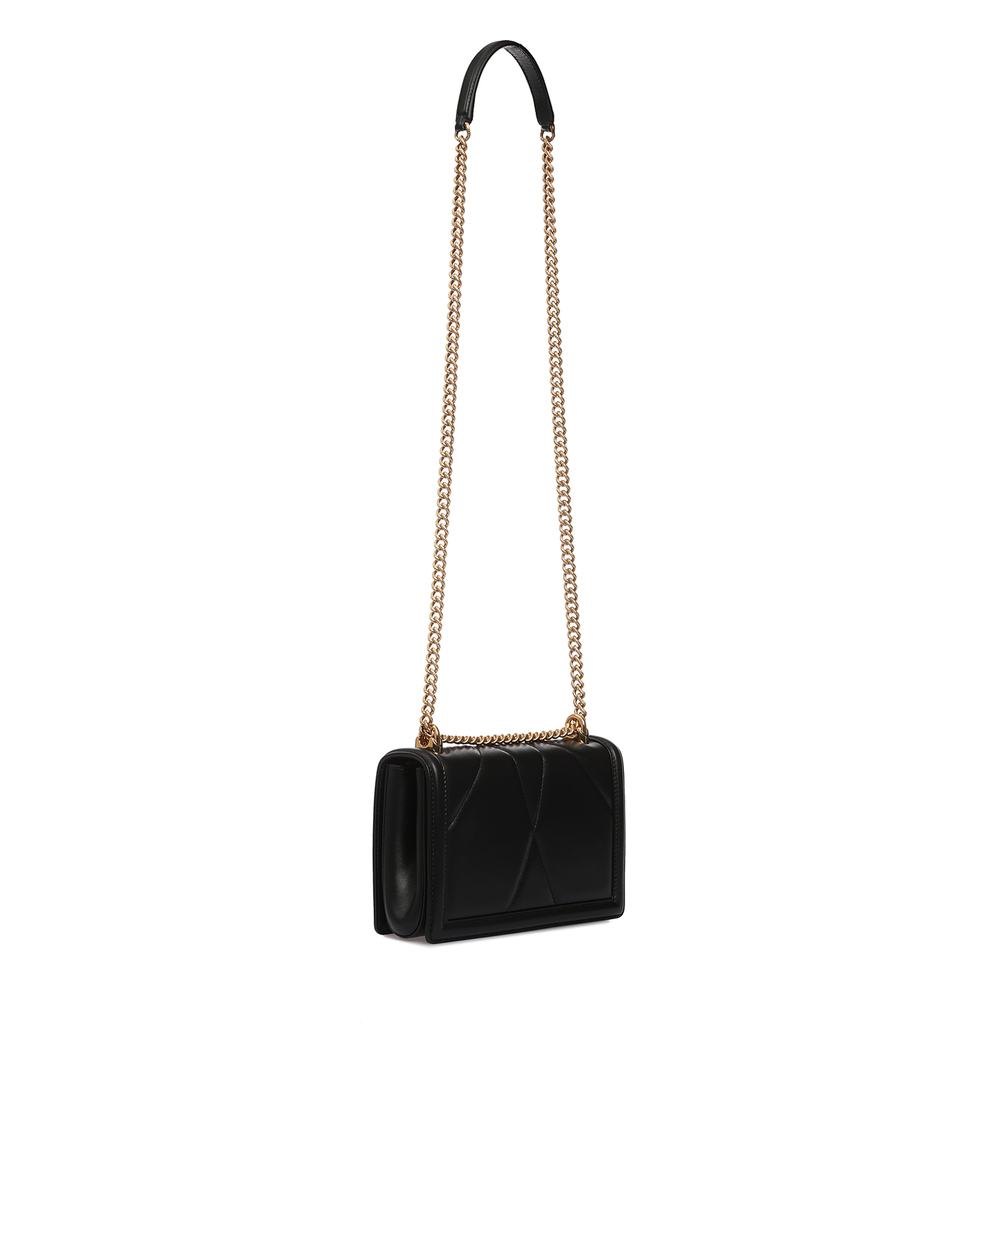 Кожаная сумка Devotion Medium Dolce&Gabbana BB6652-AV967, черный цвет • Купить в интернет-магазине Kameron